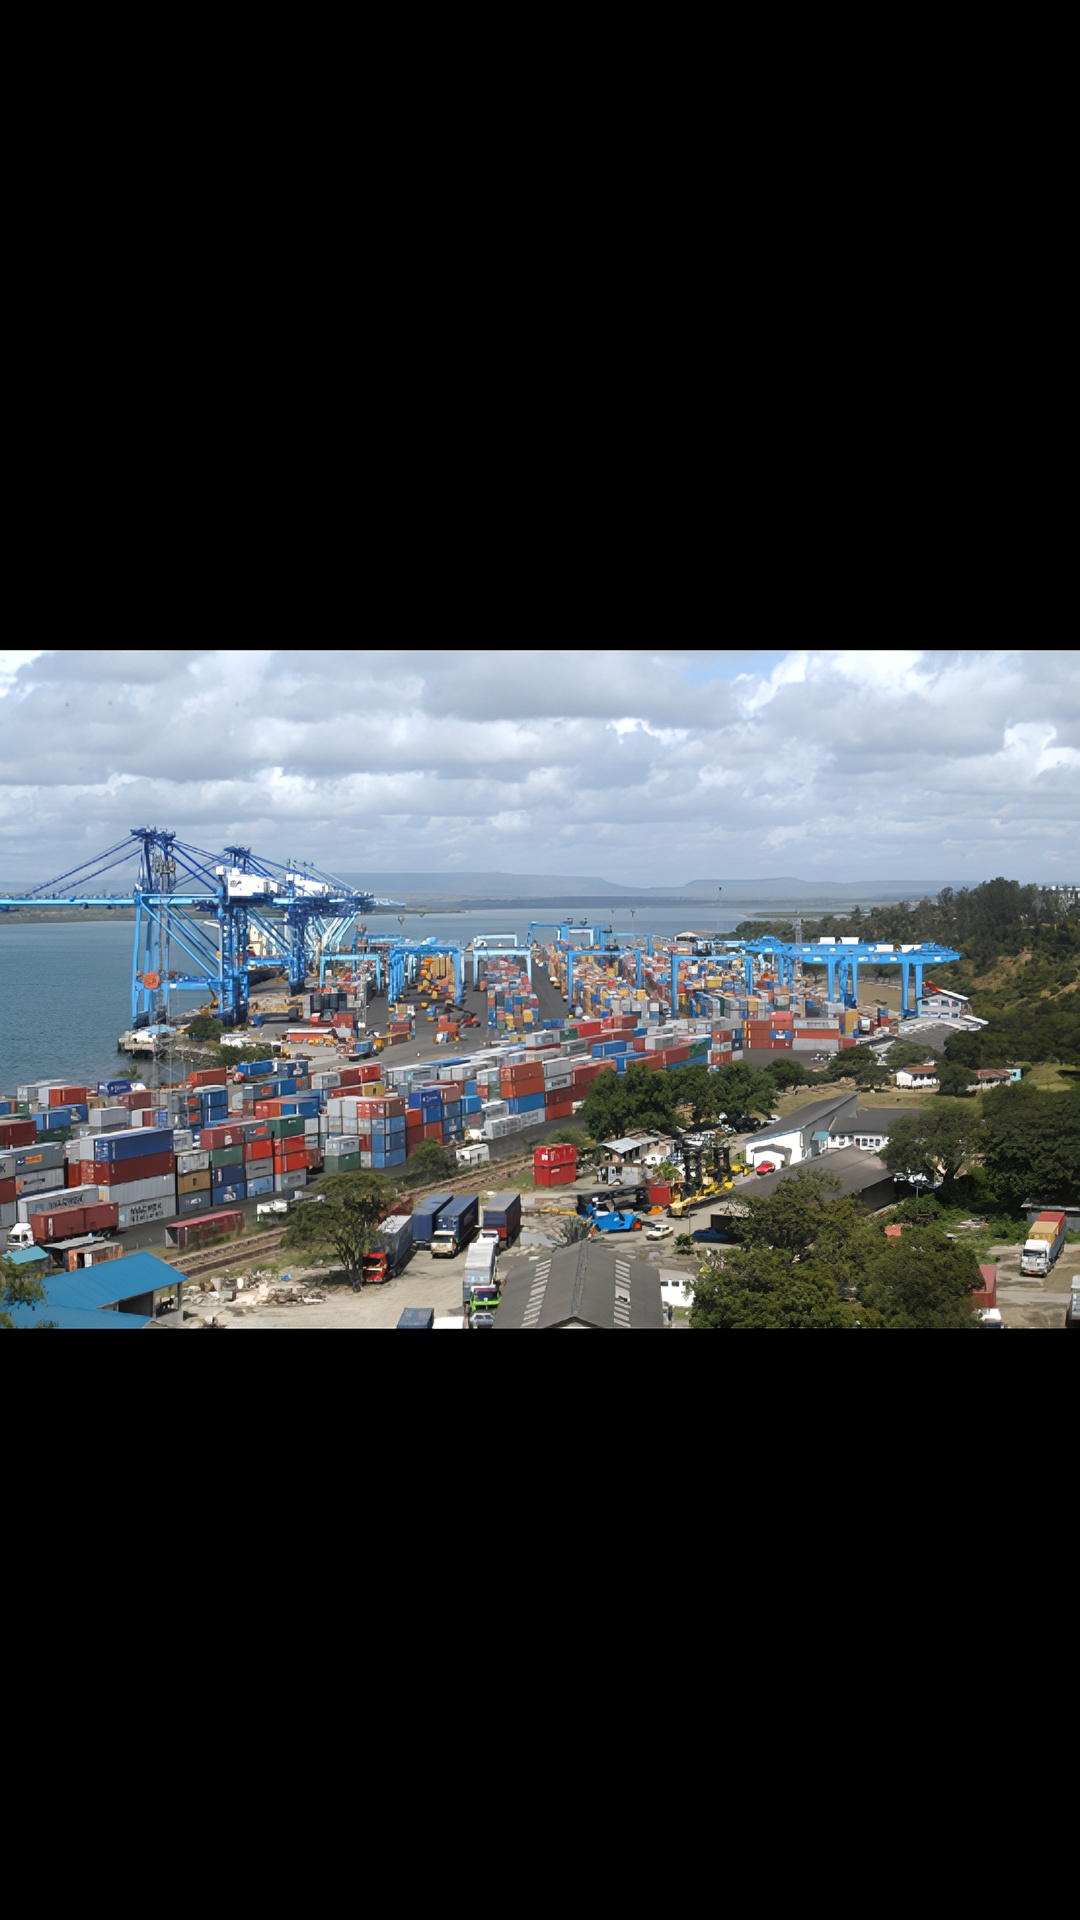 达累斯萨拉姆港位于坦桑尼亚东海岸，已有数百年历史。早在8世纪时，港口就已经开始运营。在以后的时期中，